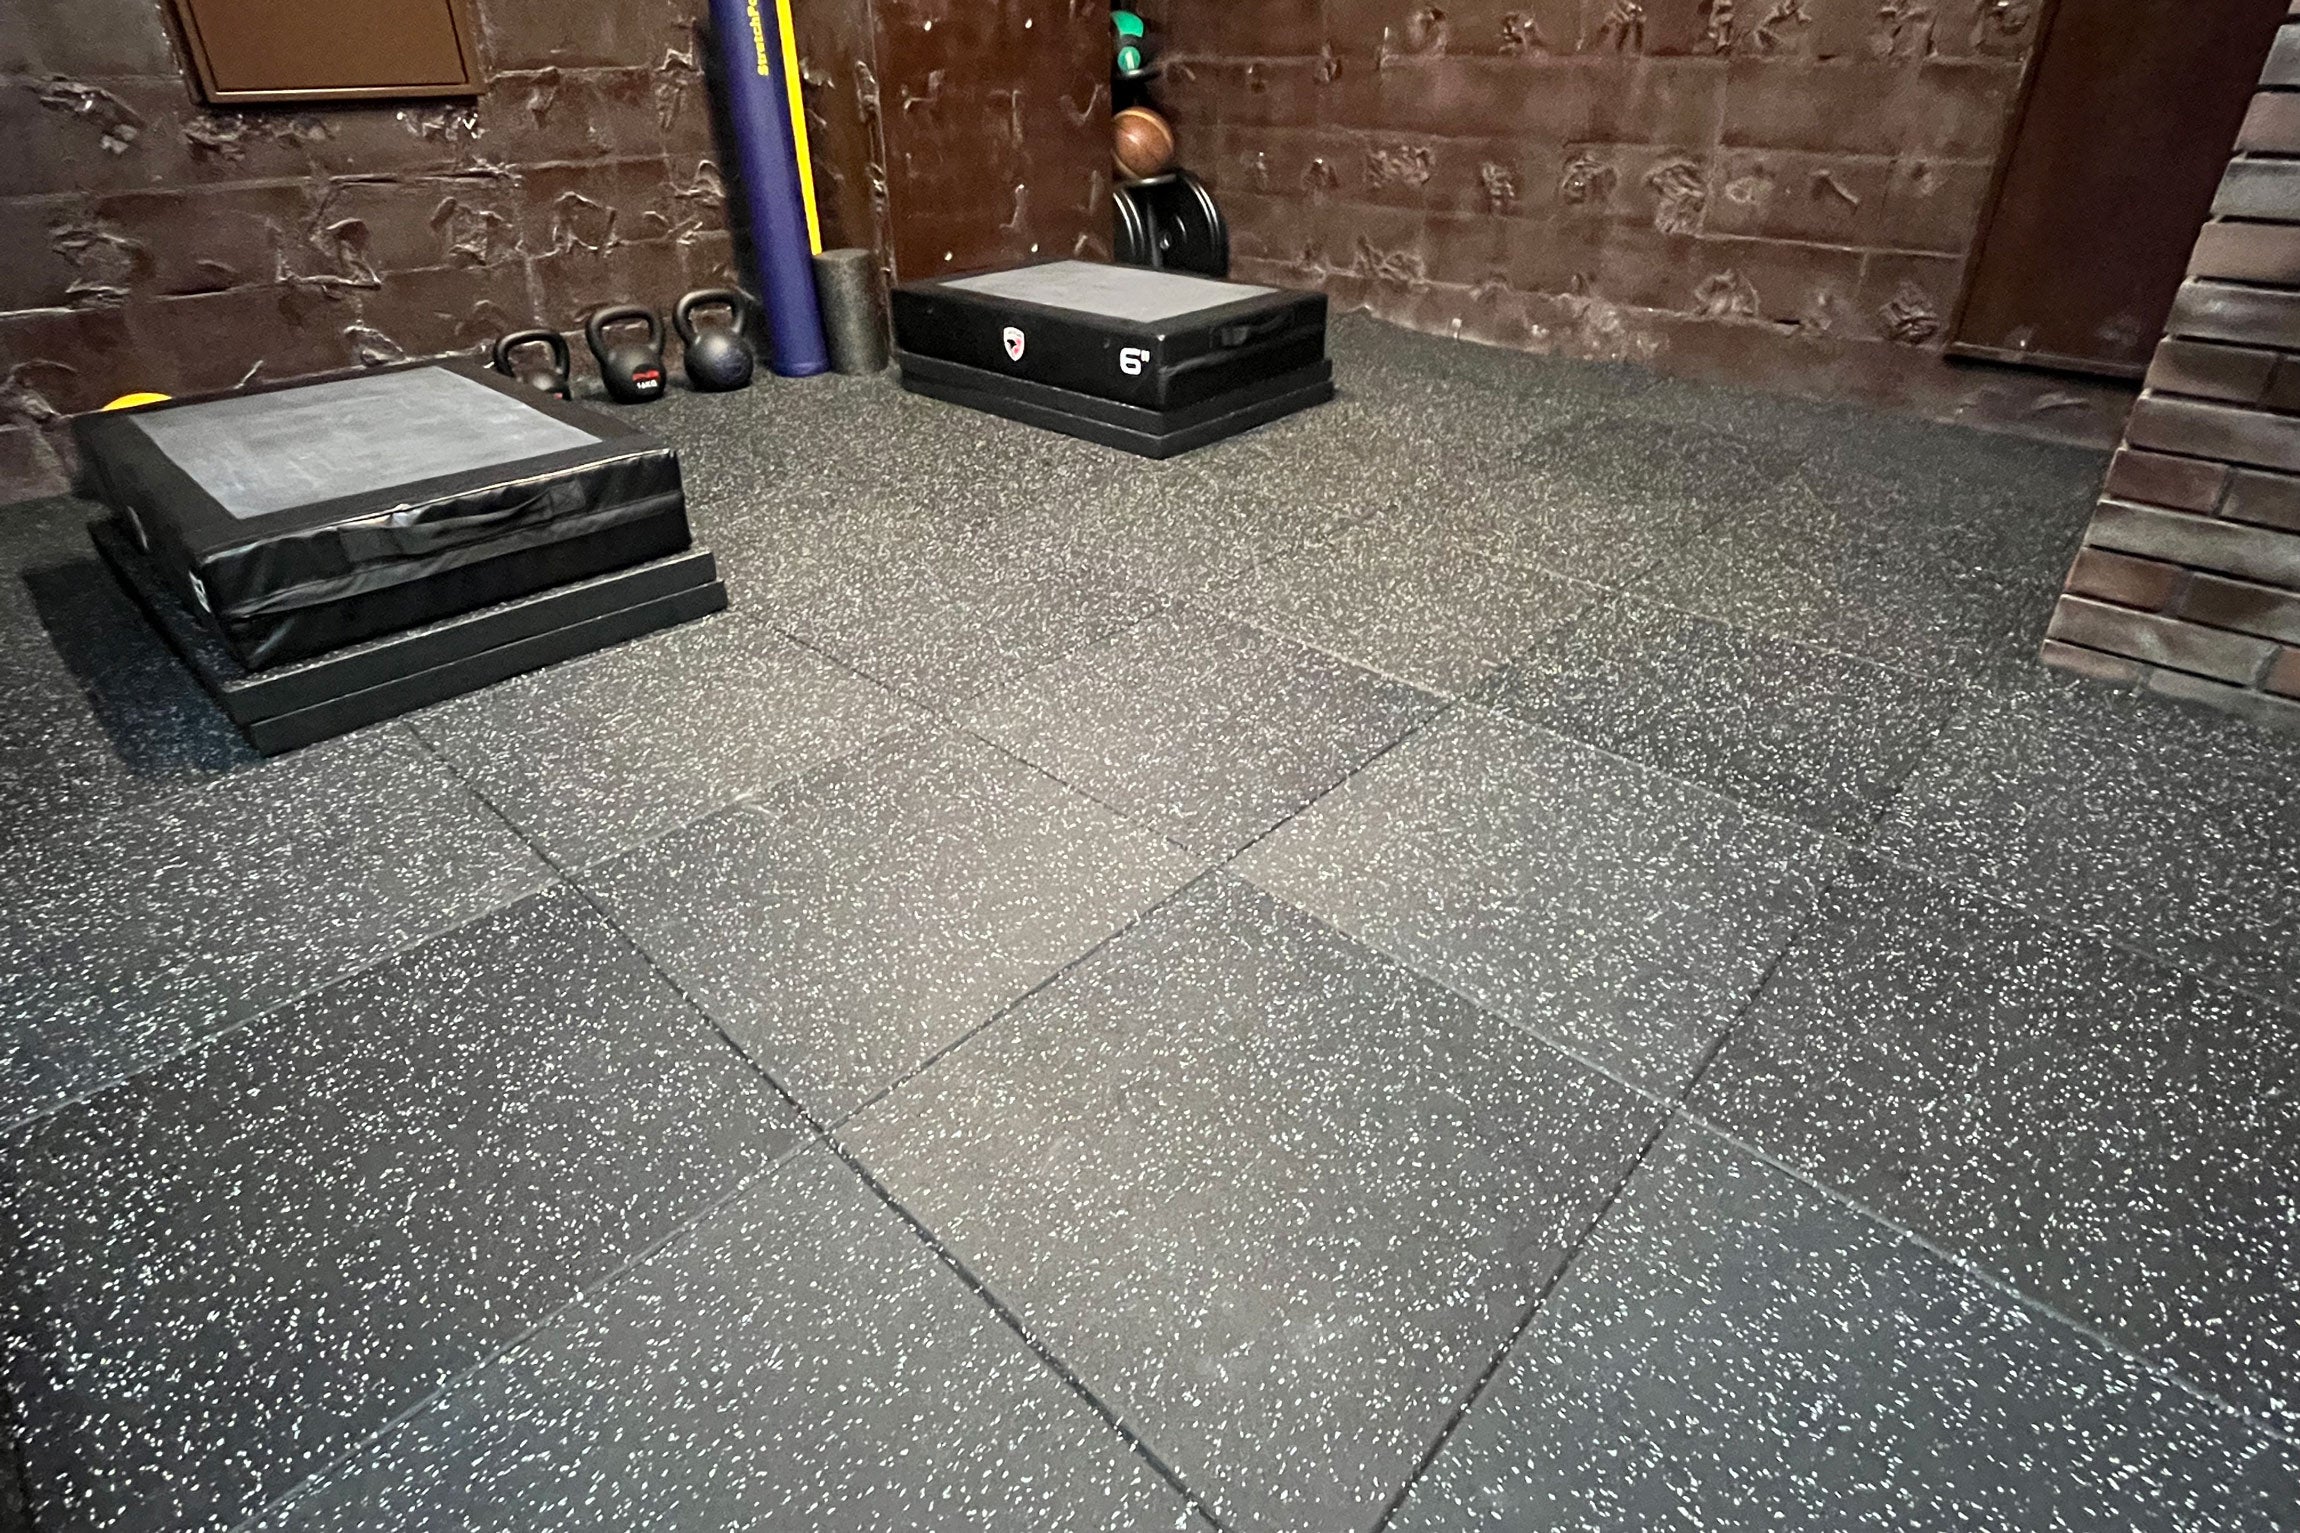 GYMMAT rubber flooring tile introduction case # 1-05